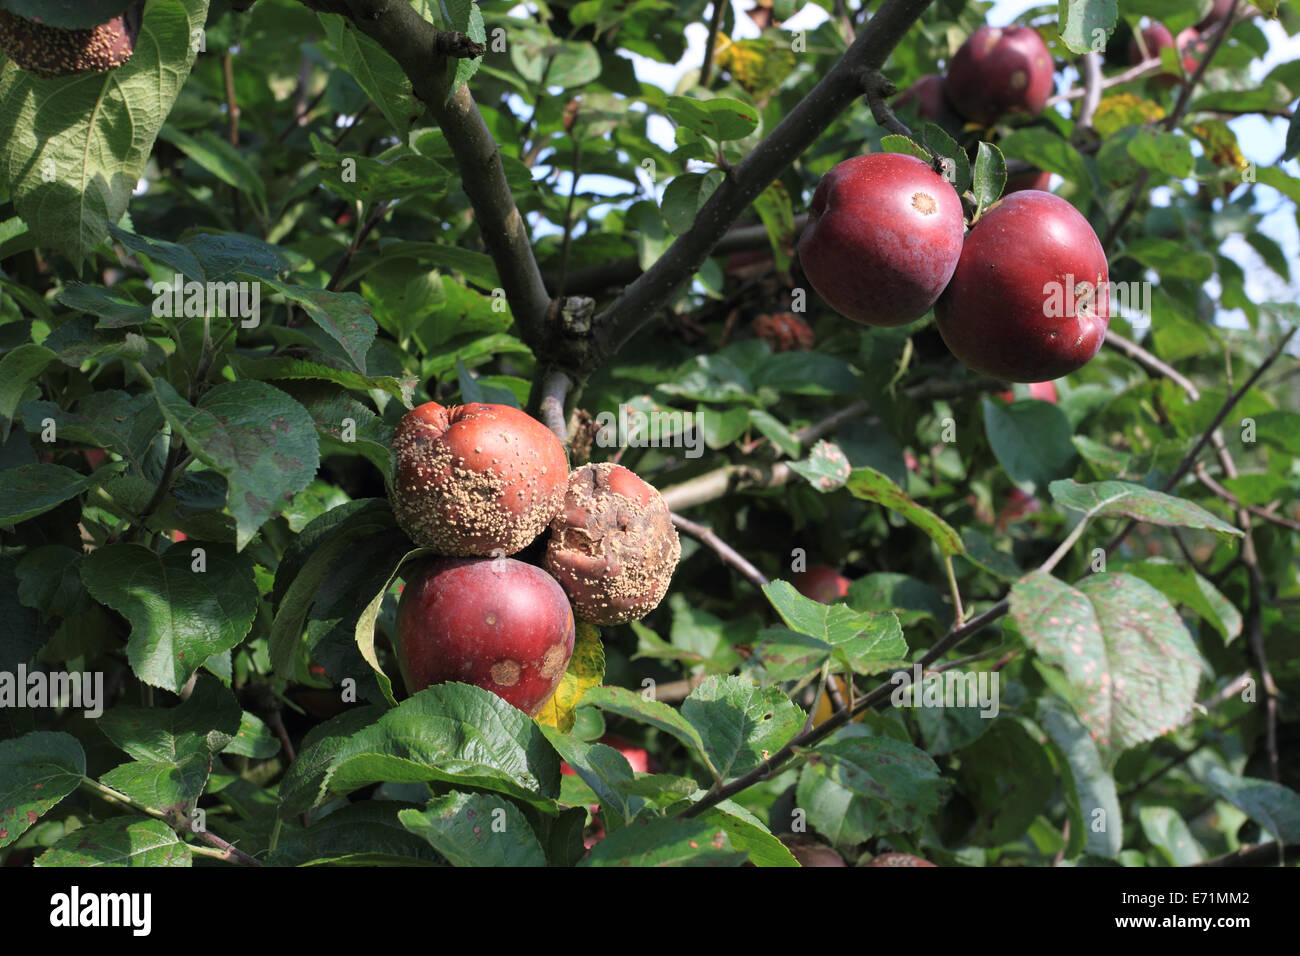 Apple farm, Archard, apple on the tree, Norfolk, UK Stock Photo